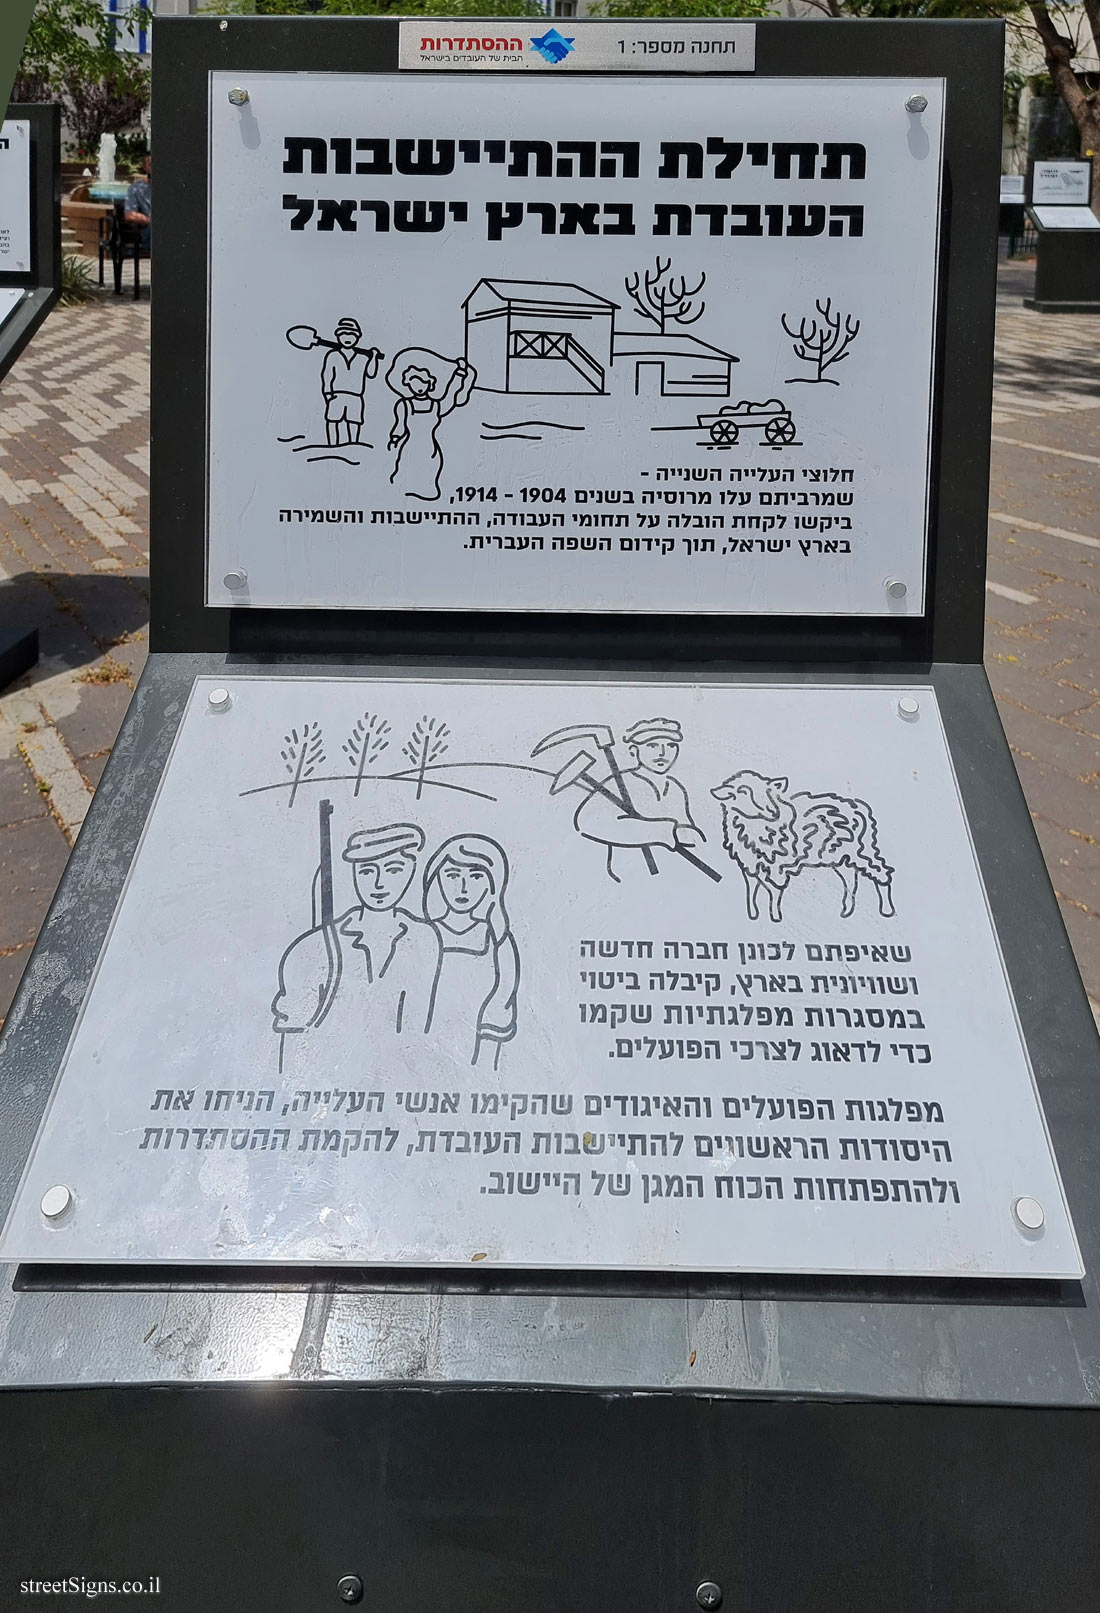 Rishon Lezion - Histadrut Garden - Milestones in the History of the Histadrut - Station 1